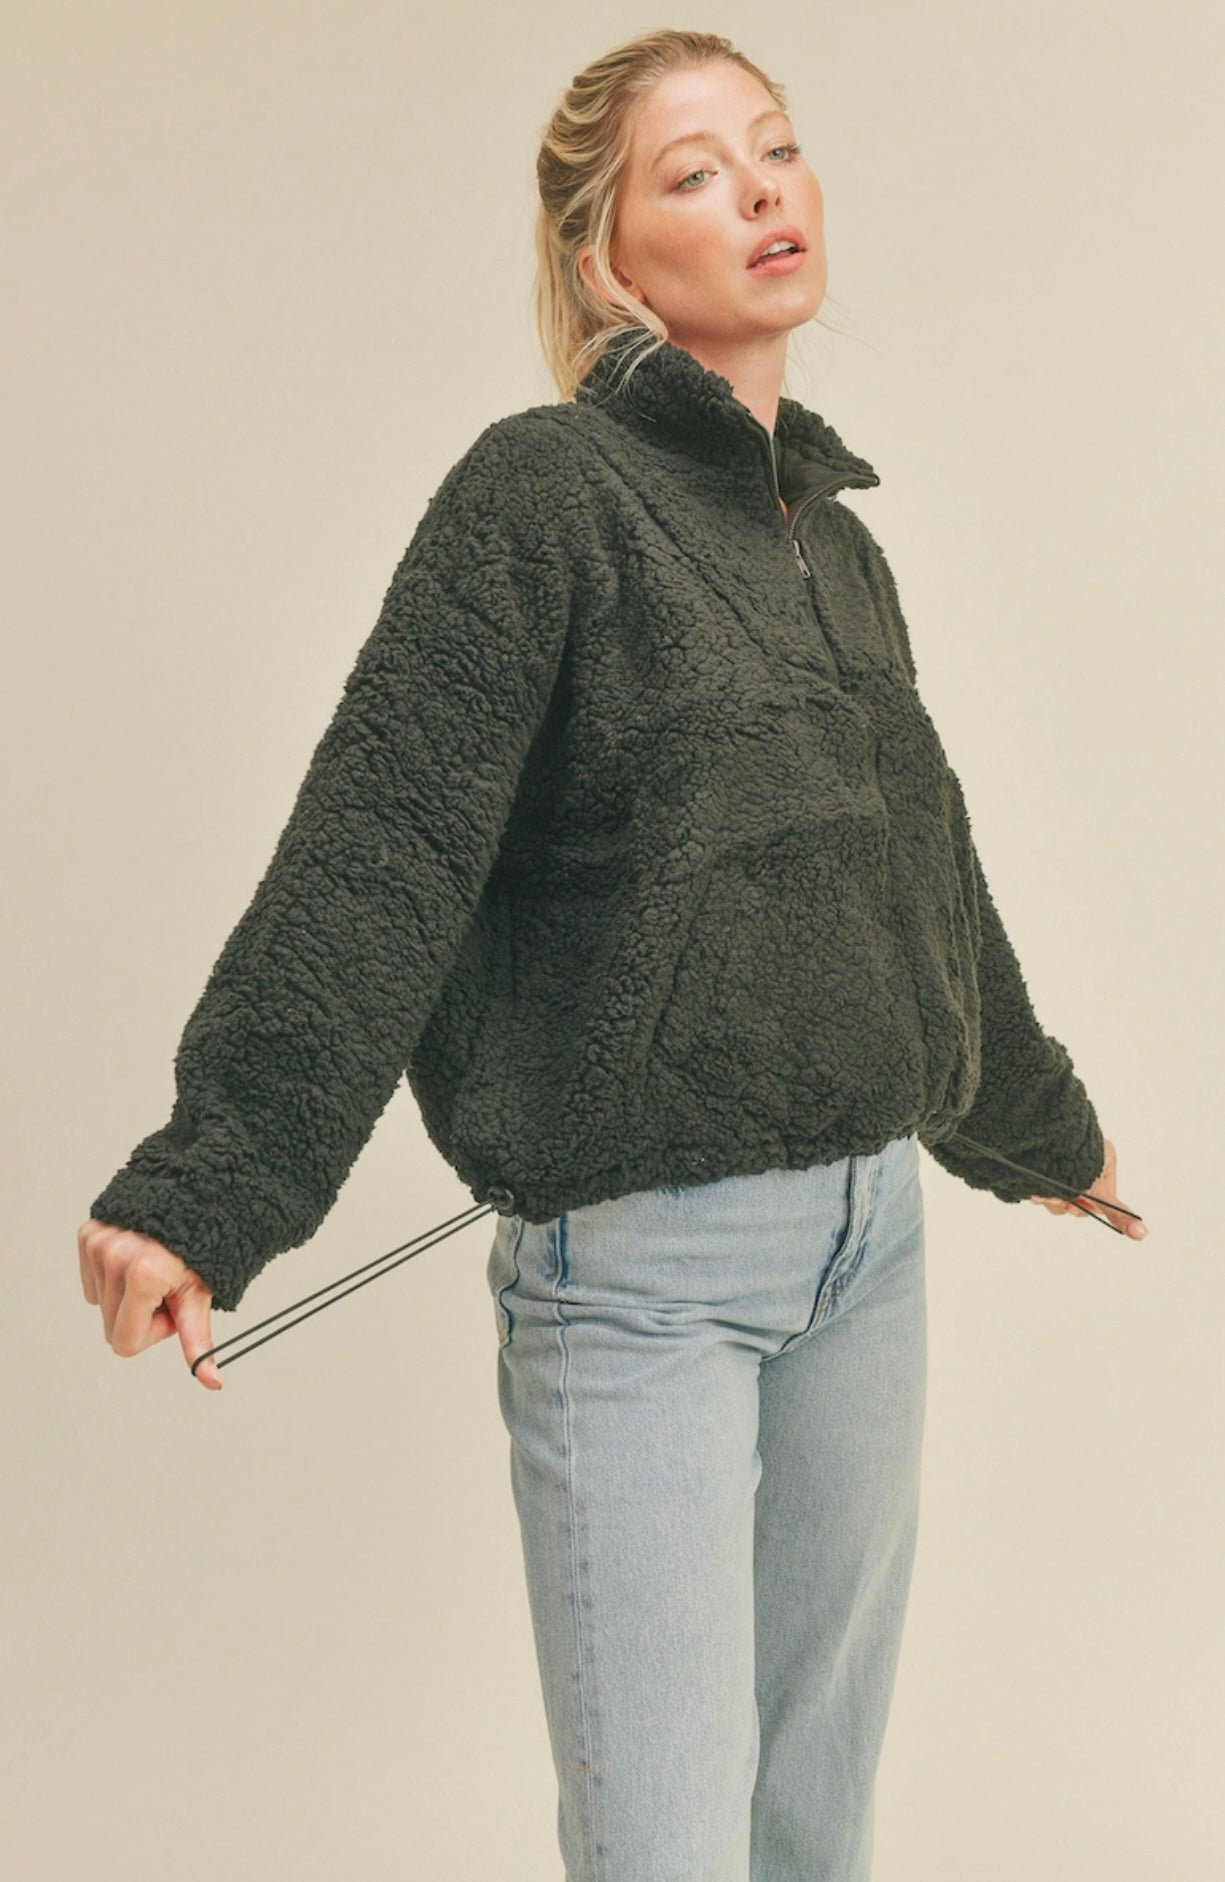 Black Half-Zip Pullover Soft Fleece